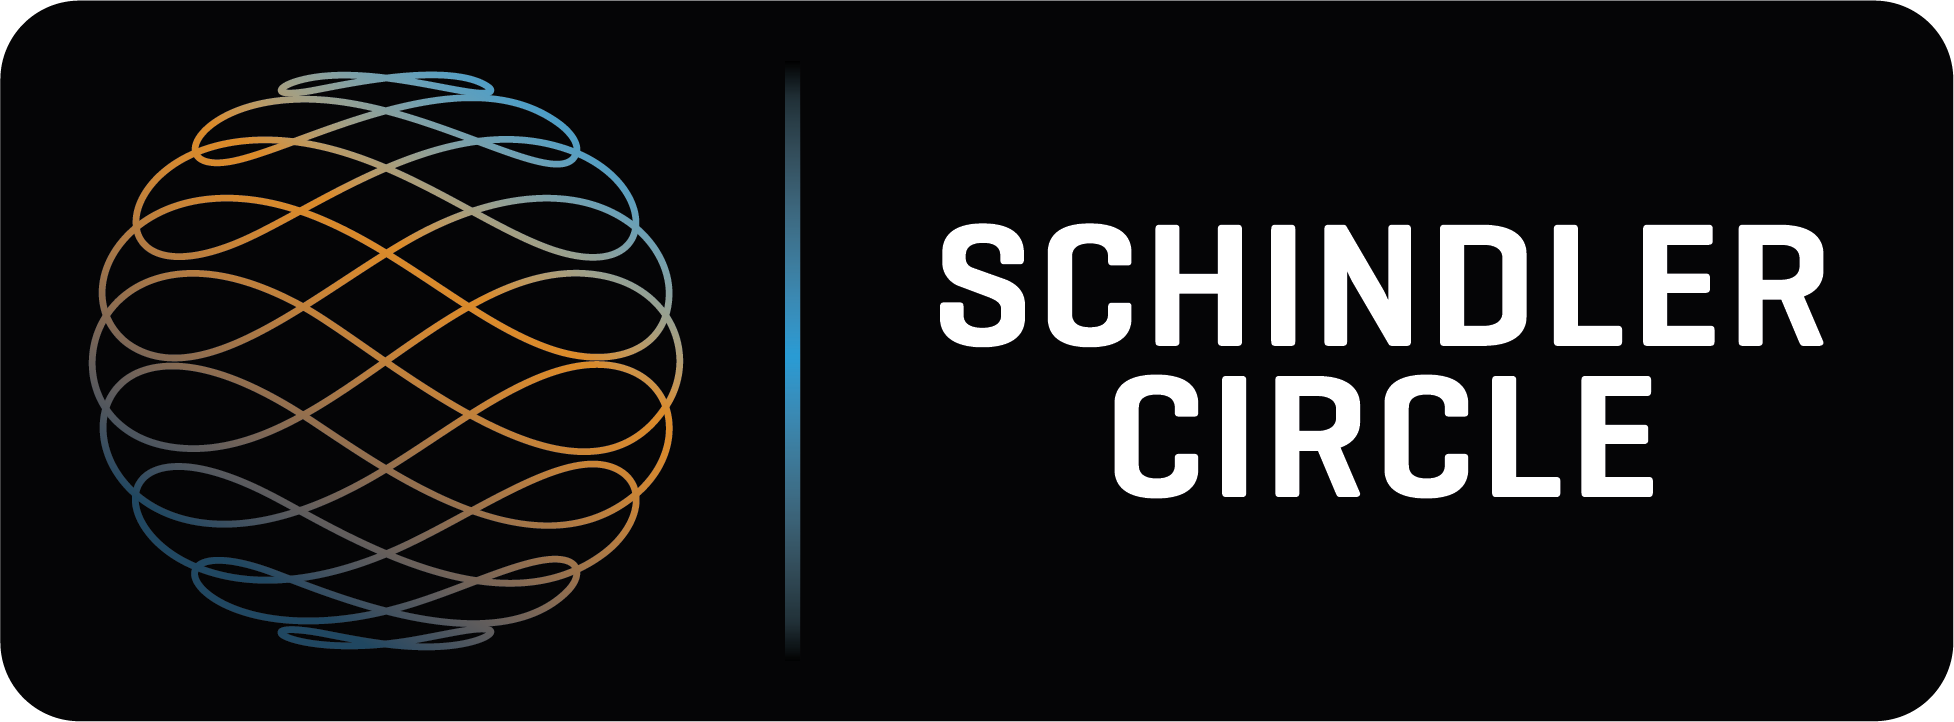 Logo Schindler Circle horizontal